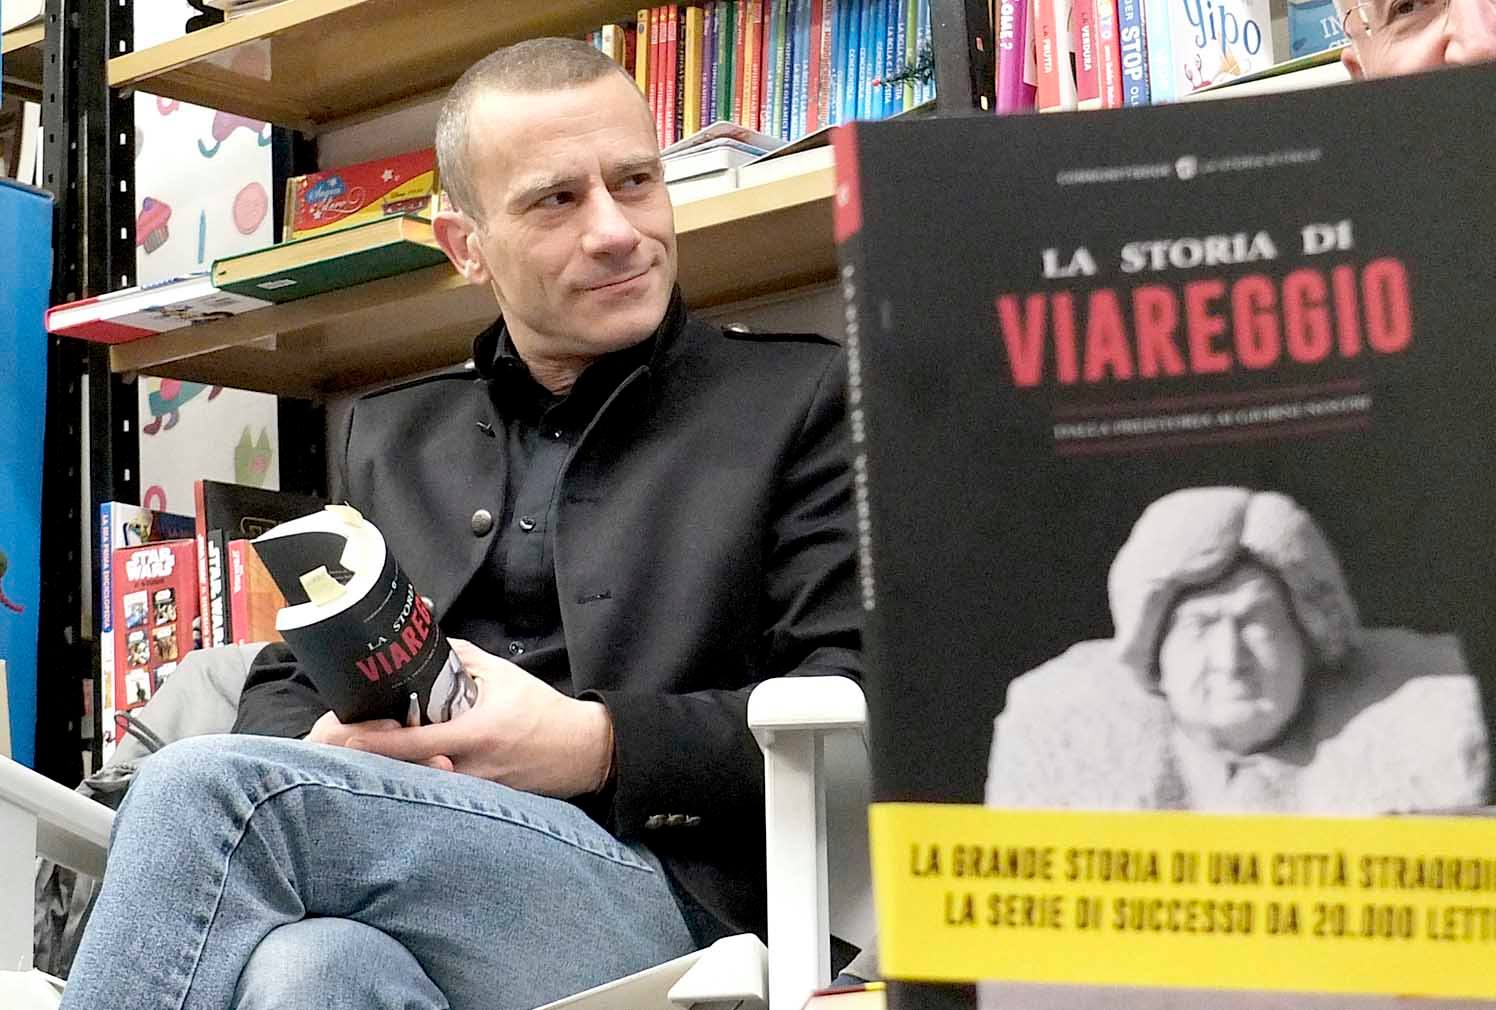 La Storia di Viareggio supera le 1000 copie vendute